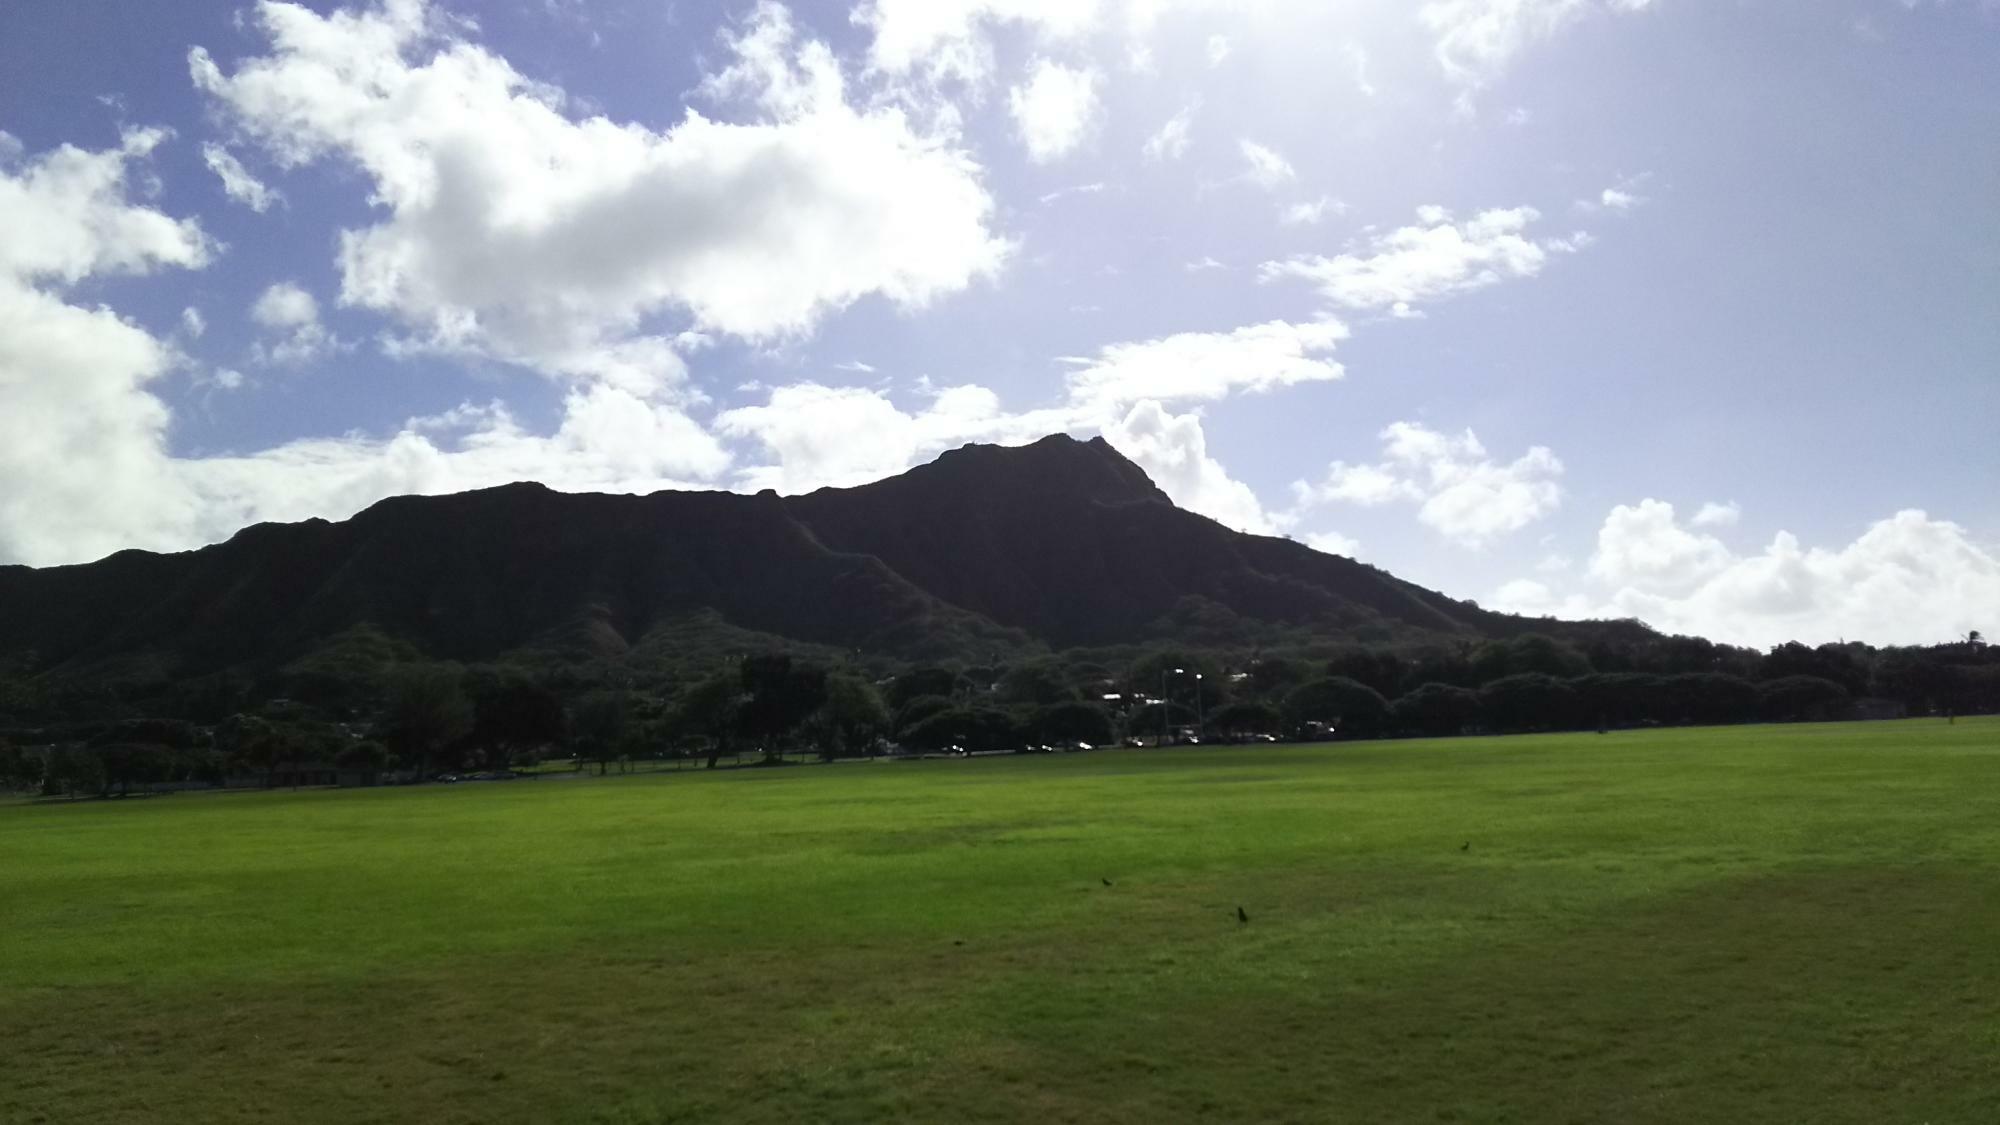 ダイヤモンド・ヘッドが一望できるカピオラニ公園。ハワイ州内最大の公園で、その敷地面積は300エーカーで東京ドーム26個分。筆者もセグウェイで走行してみたものの、果てしなき旅となった（2017年撮影）。